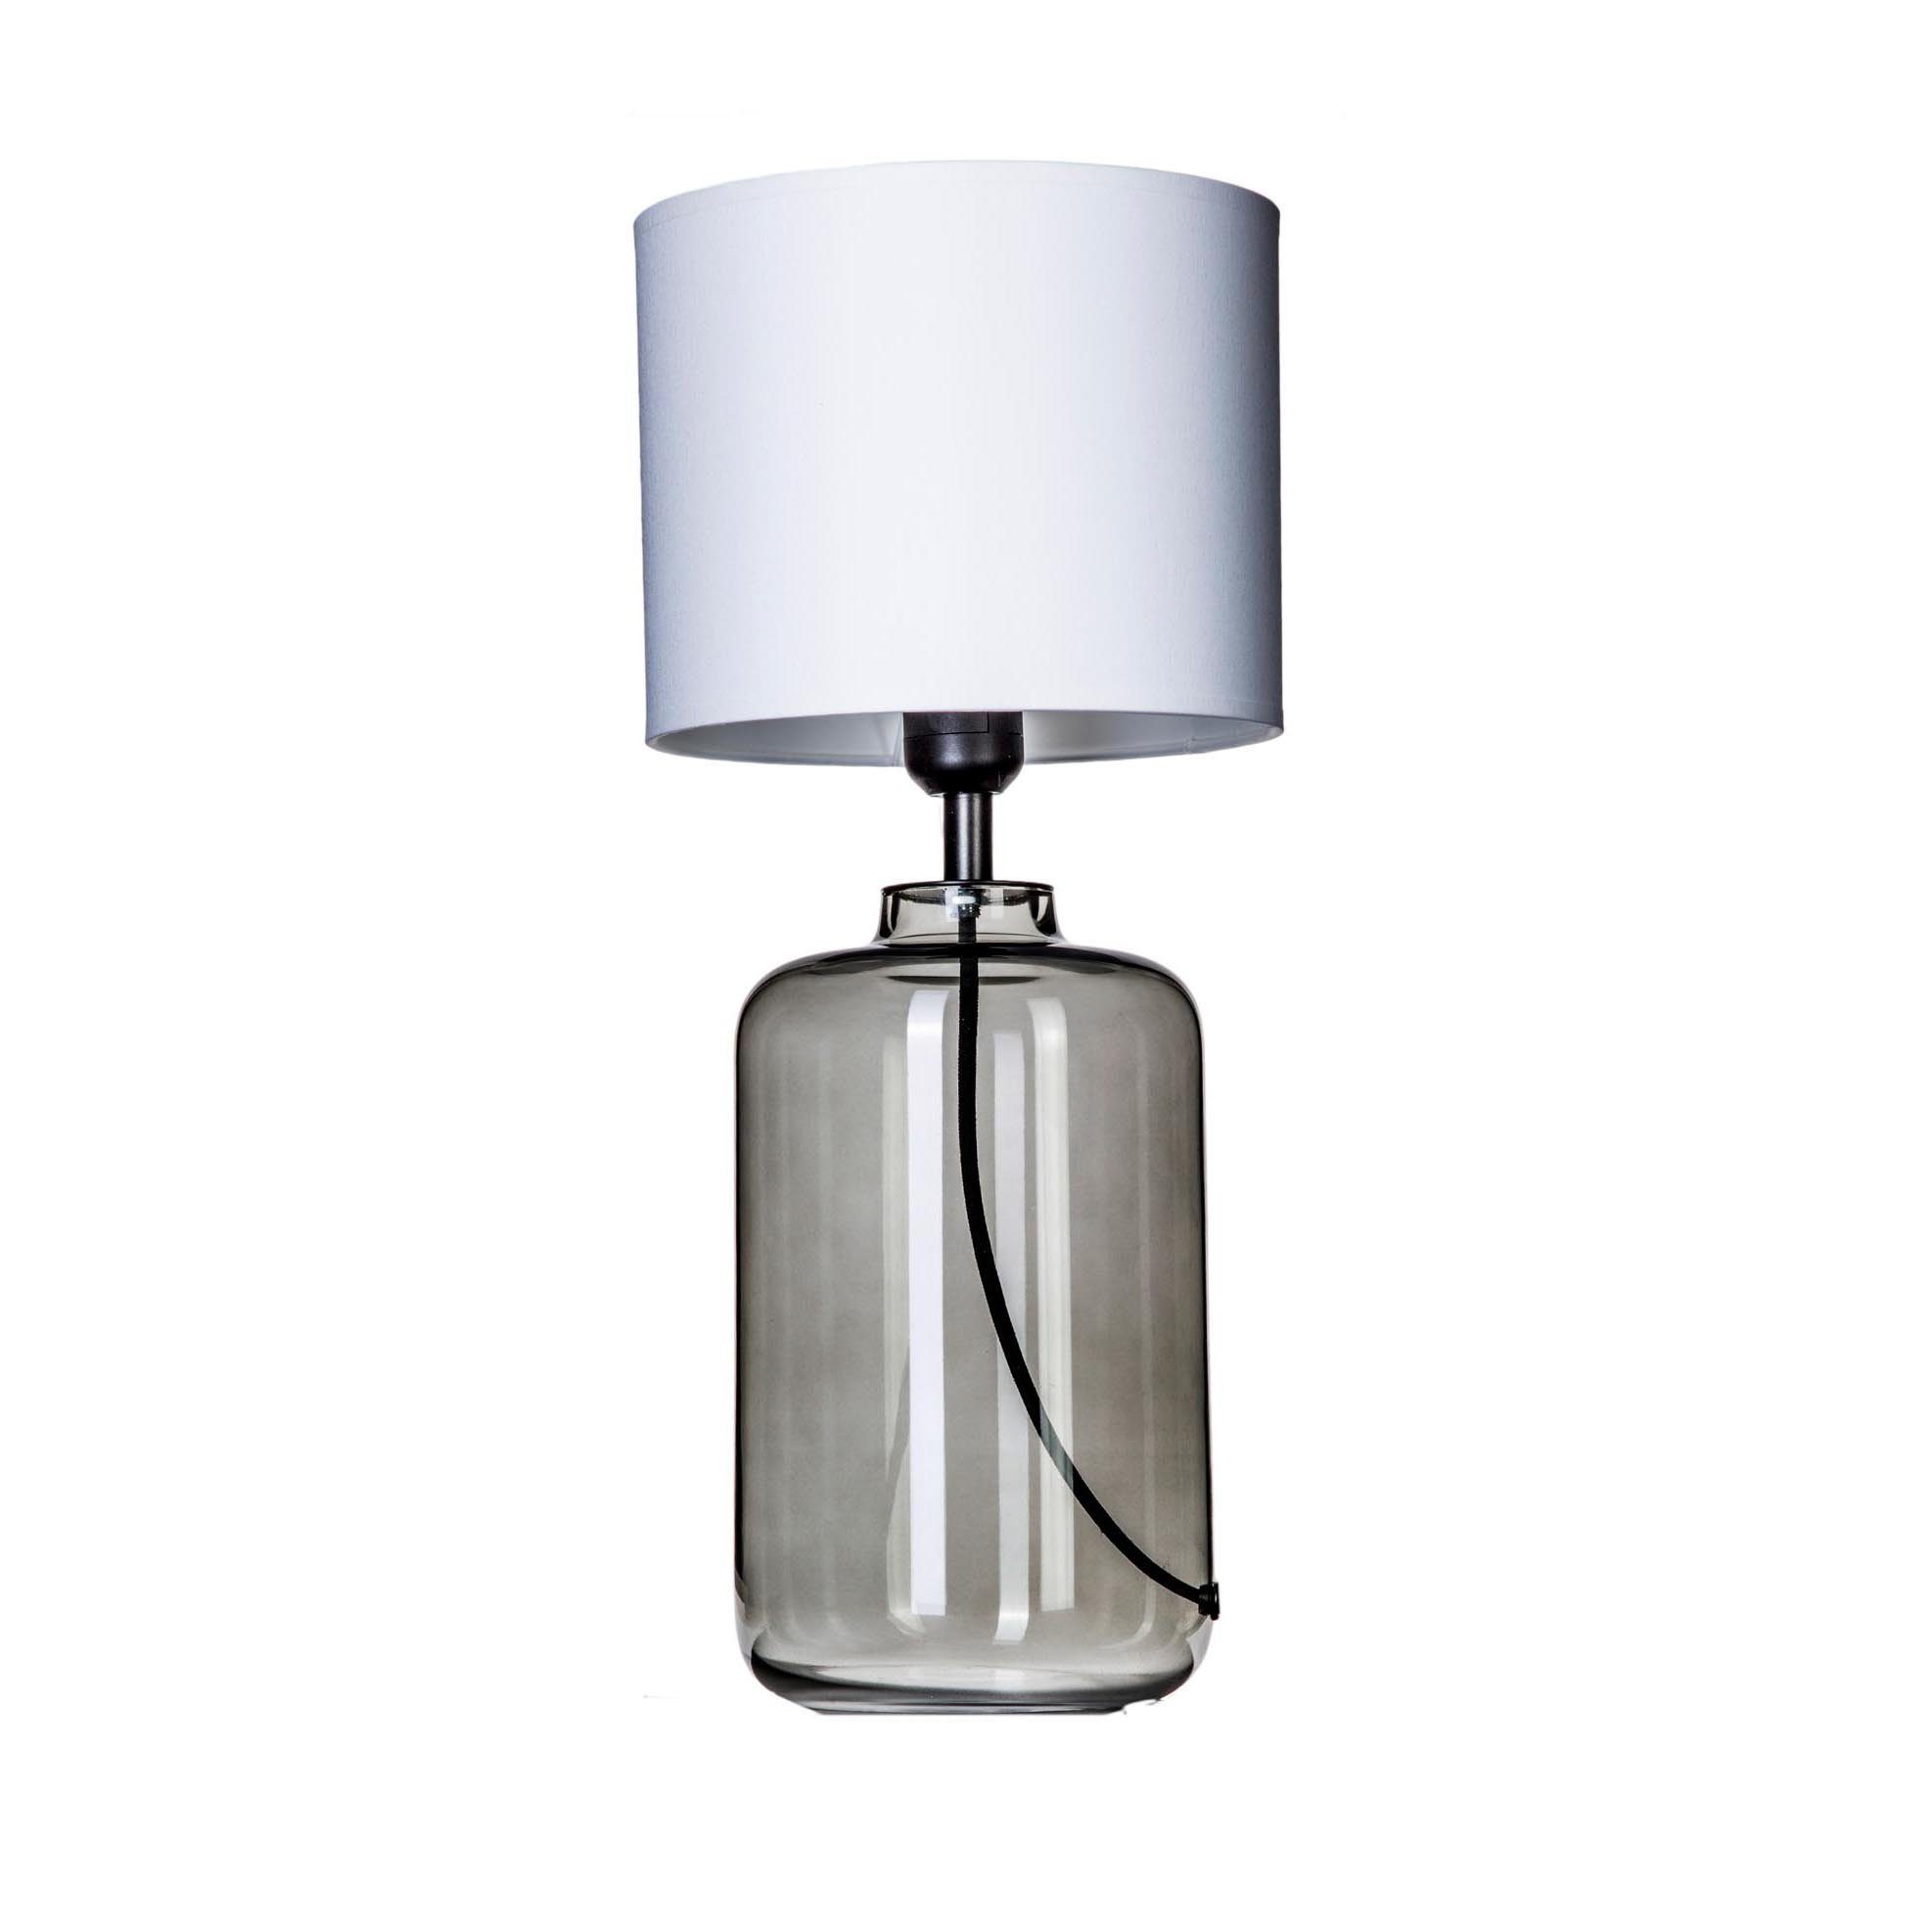 Signature Home Collection Tischleuchte Tischlampe Glas grau durchsichtig mit Lampenschirm weiß, ohne Leuchtmittel, warmweiß, Tischlame aus mundgeblasenem Glas durchscheinend anthrazith